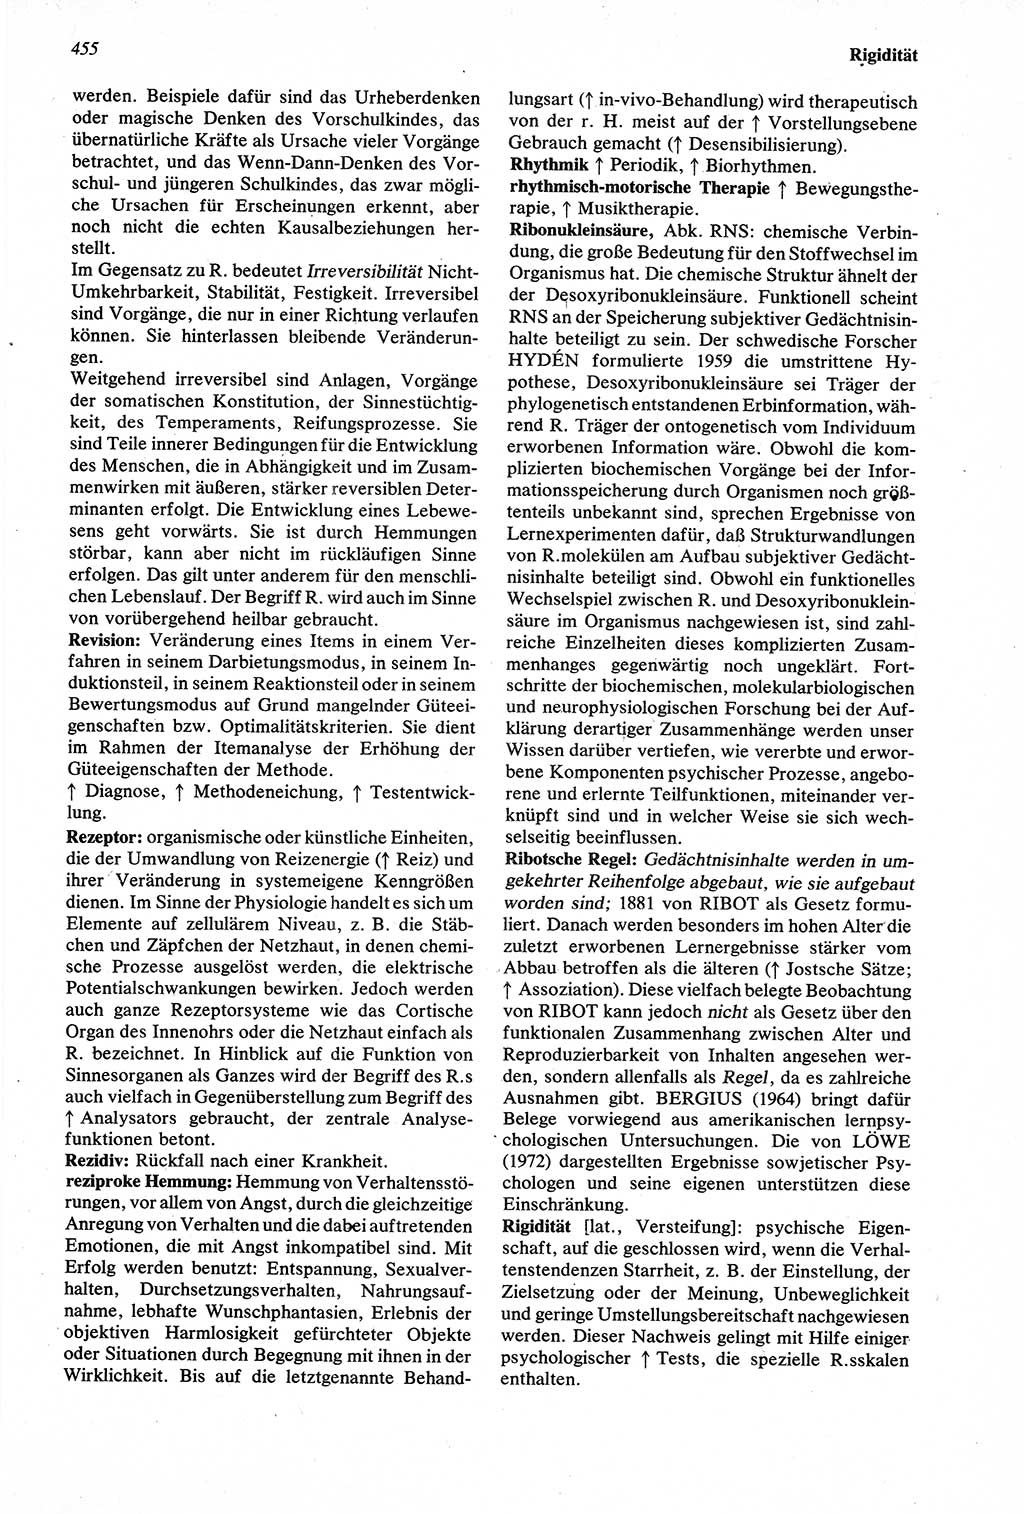 Wörterbuch der Psychologie [Deutsche Demokratische Republik (DDR)] 1976, Seite 455 (Wb. Psych. DDR 1976, S. 455)